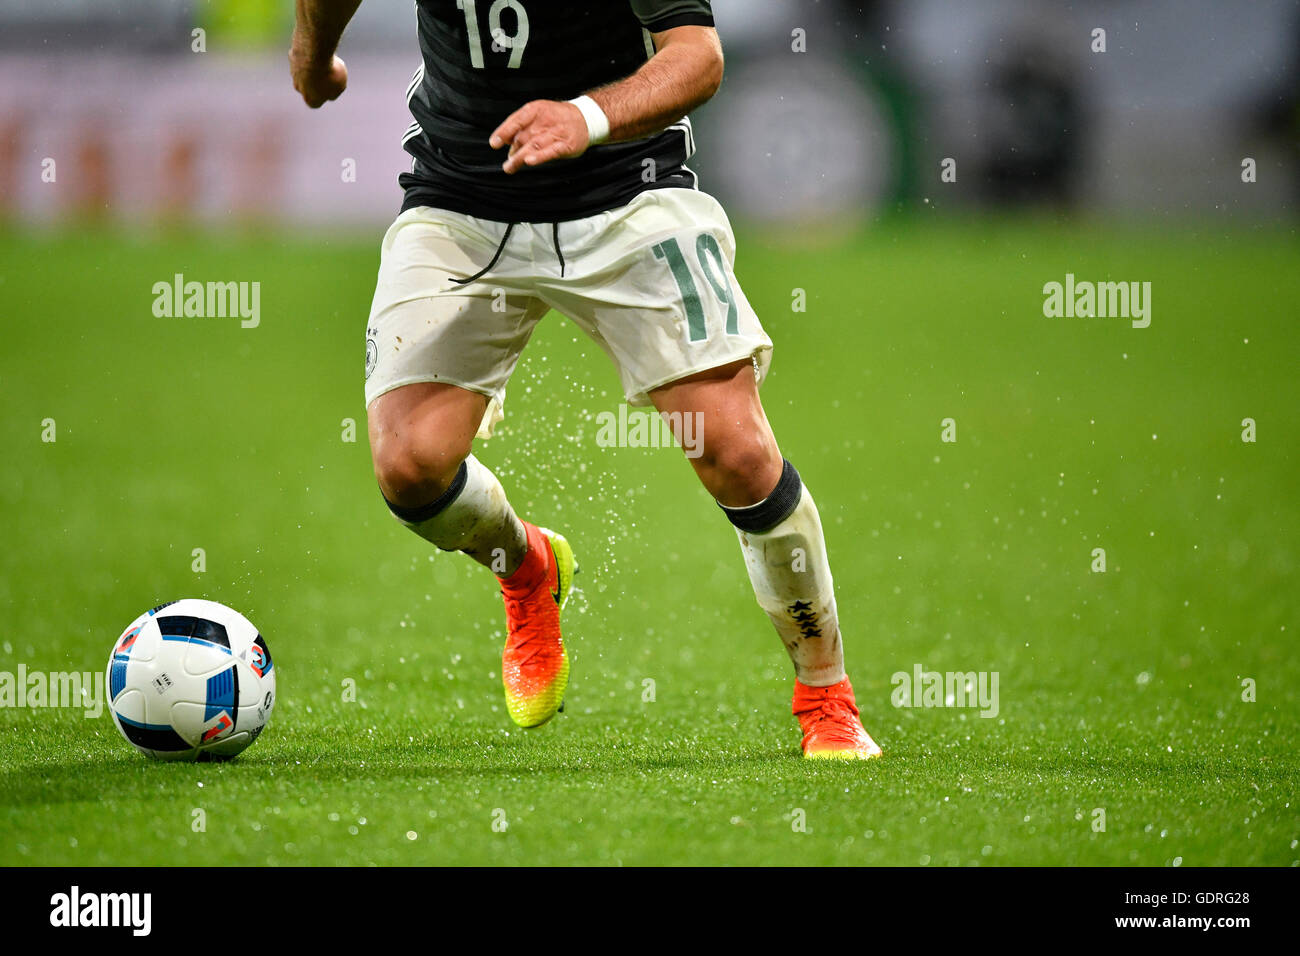 Détail, les jambes de Mario Goetze, joueur de football allemand, jouer la balle lorsqu'il pleut, WWK Arena, Augsbourg, Bavière, Allemagne Banque D'Images